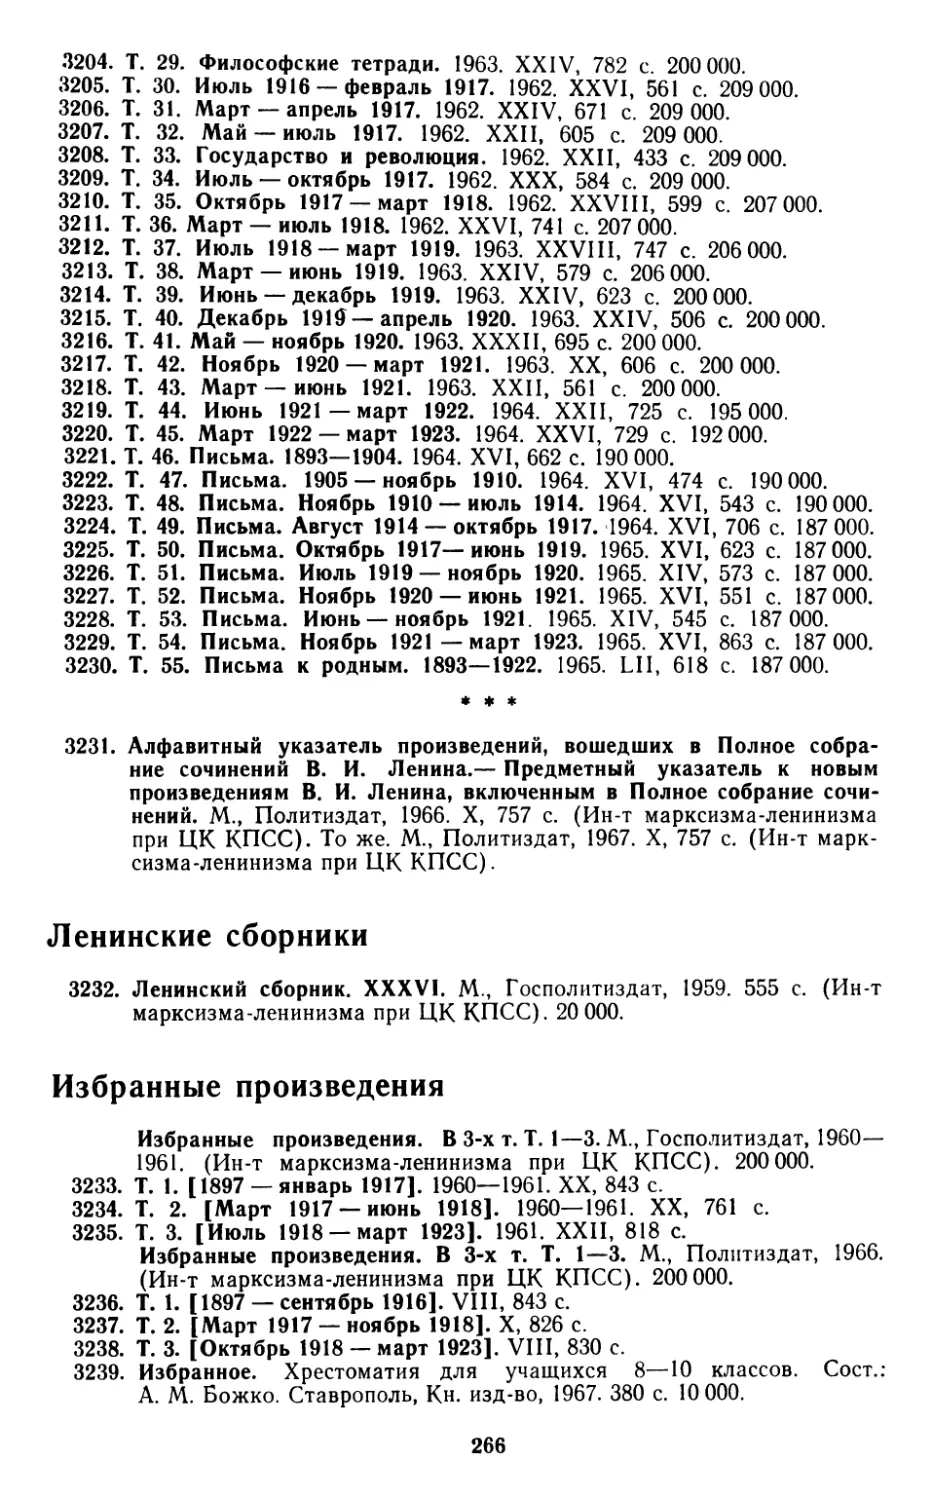 Ленинские сборники
Избранные произведения